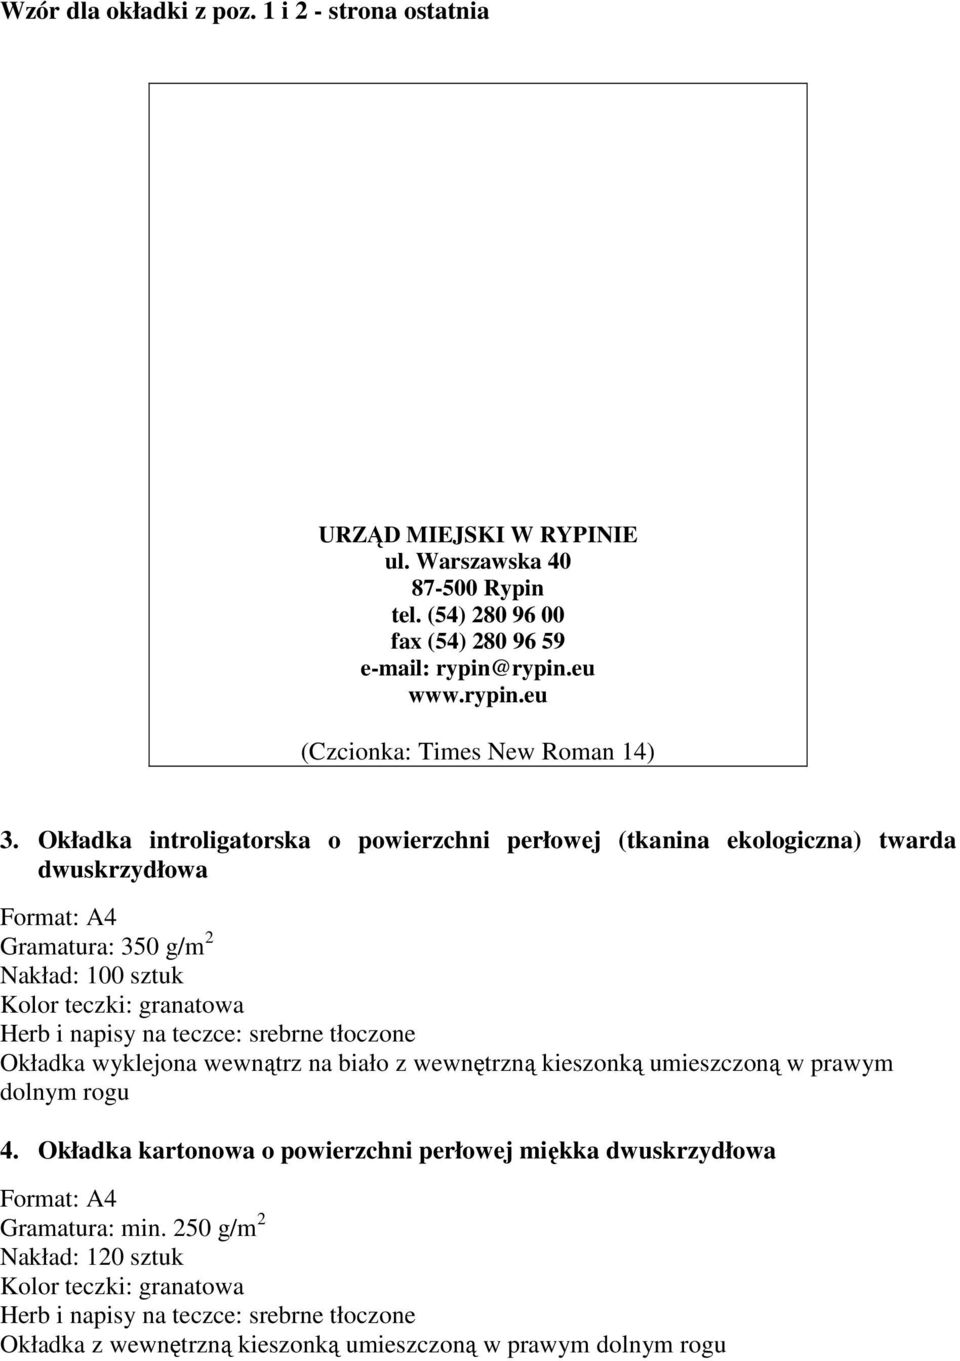 Okładka introligatorska o powierzchni perłowej (tkanina ekologiczna) twarda dwuskrzydłowa Gramatura: 350 g/m 2 Nakład: 100